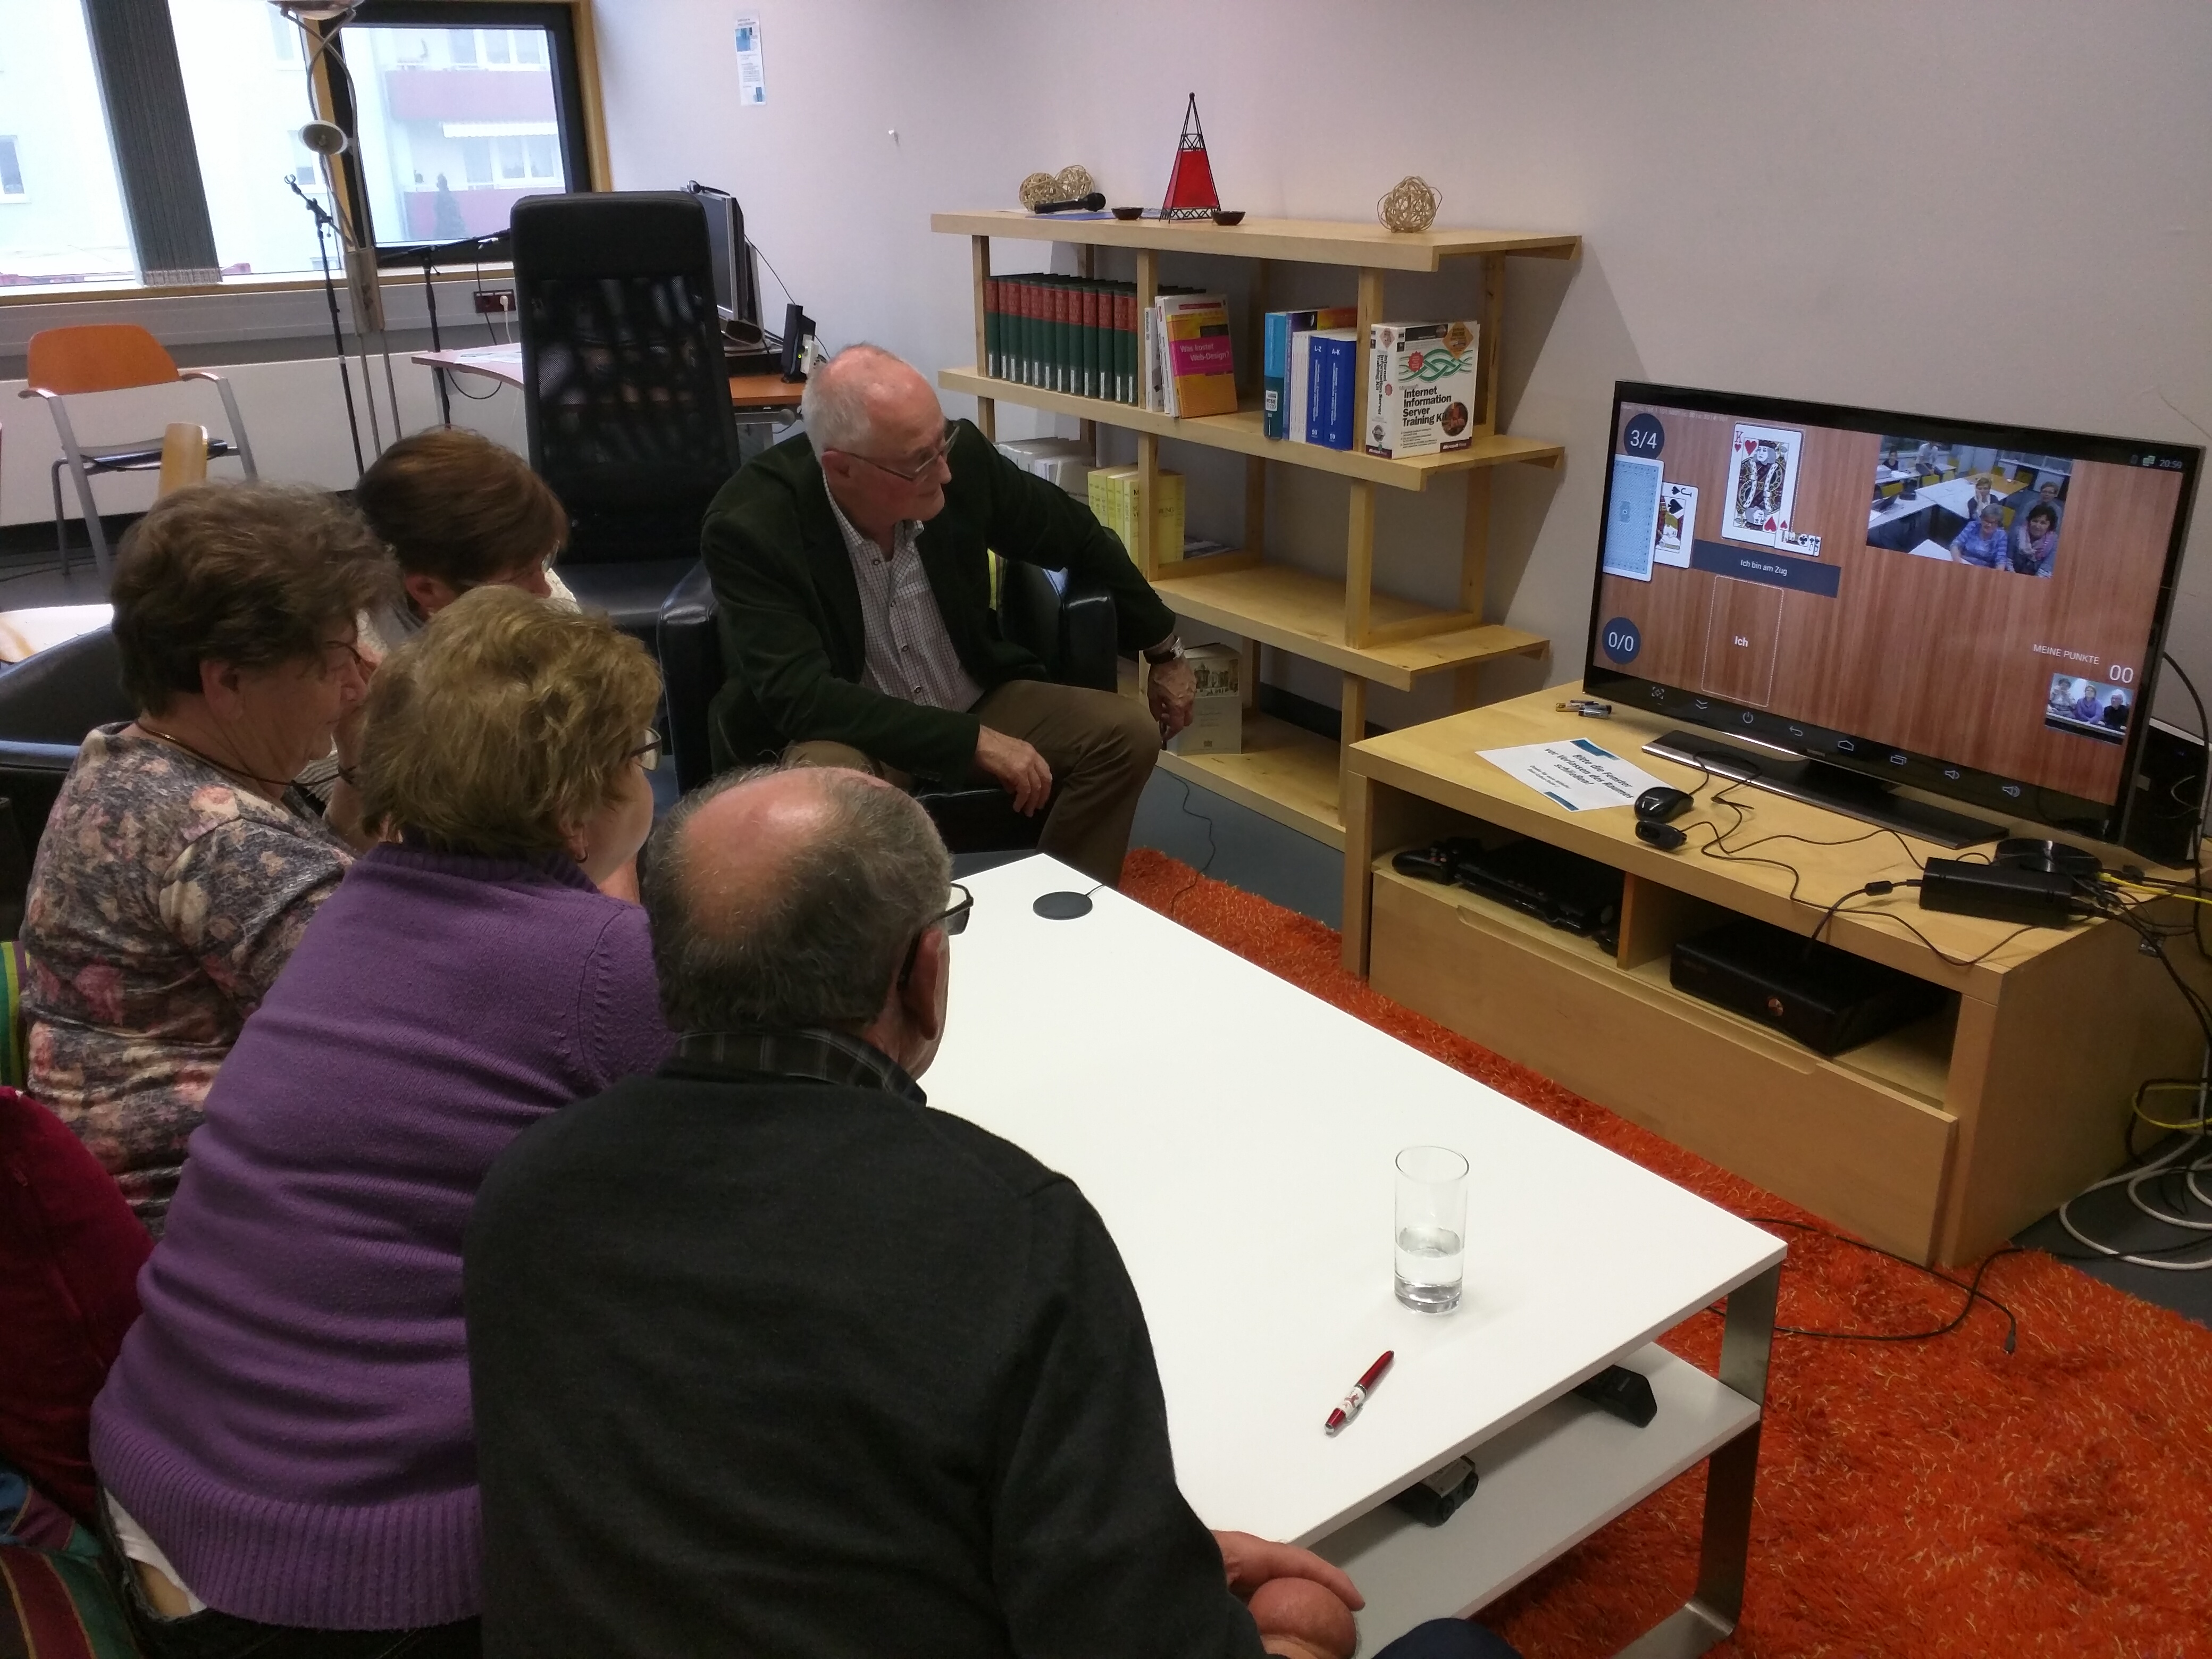 eine Gruppe Senior:innen testet Umbrello. Fünf Personen sitzen vor einem Fernseher auf dem eine andere Gruppe von Senir:innen und ein Schnapskarten-Spiel zu sehen sind